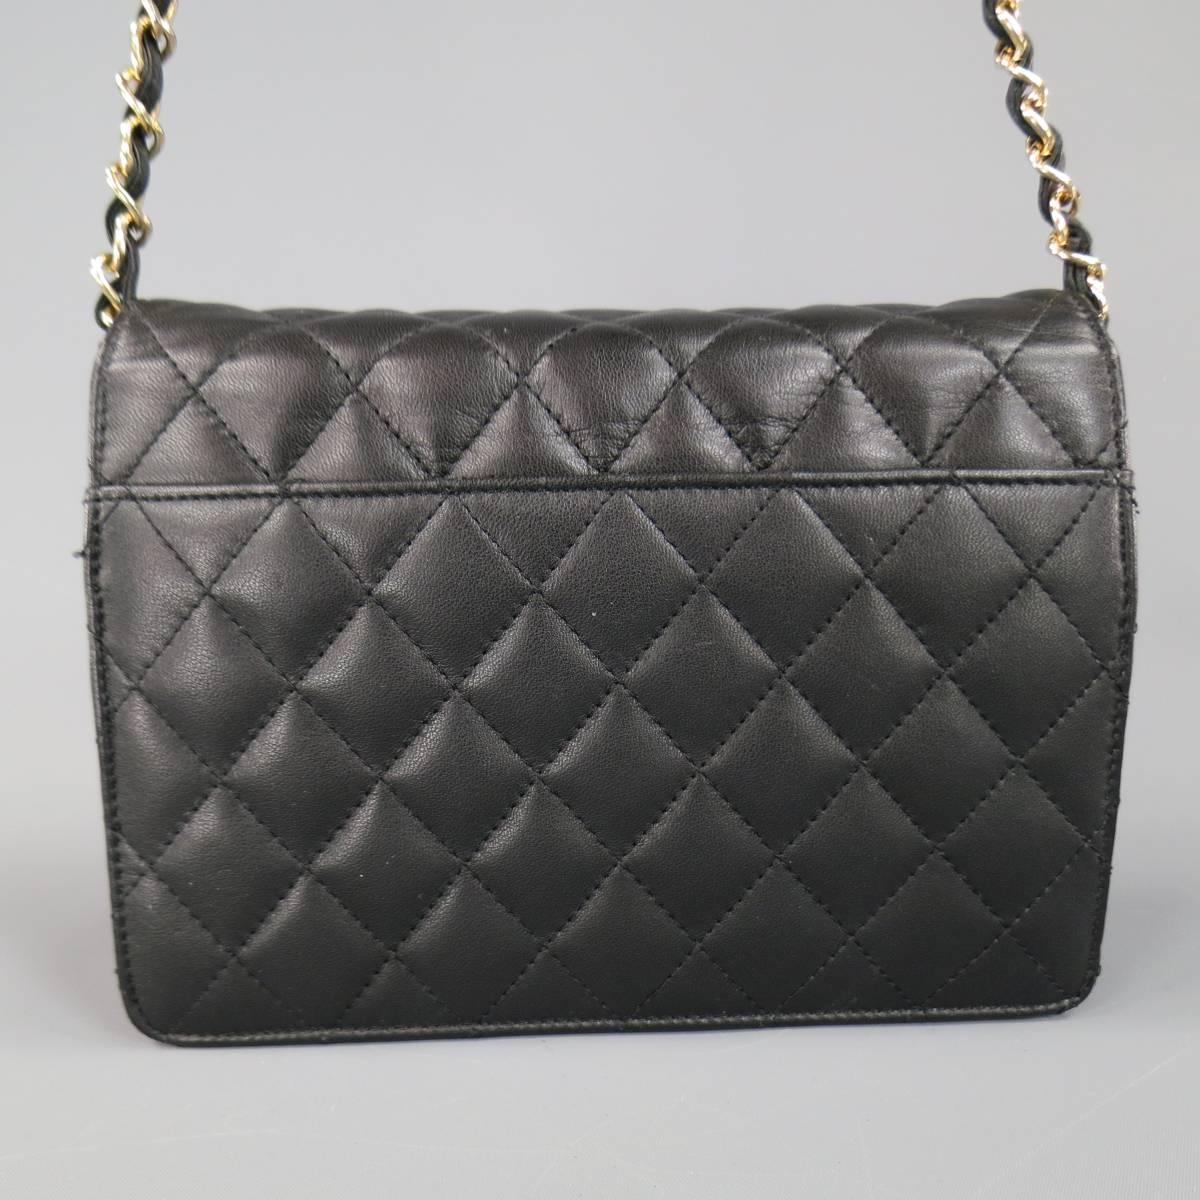 Vintage I.MAGNIN Black Quilted Leather Gold Woven Chain Strap Shoulder Bag 2